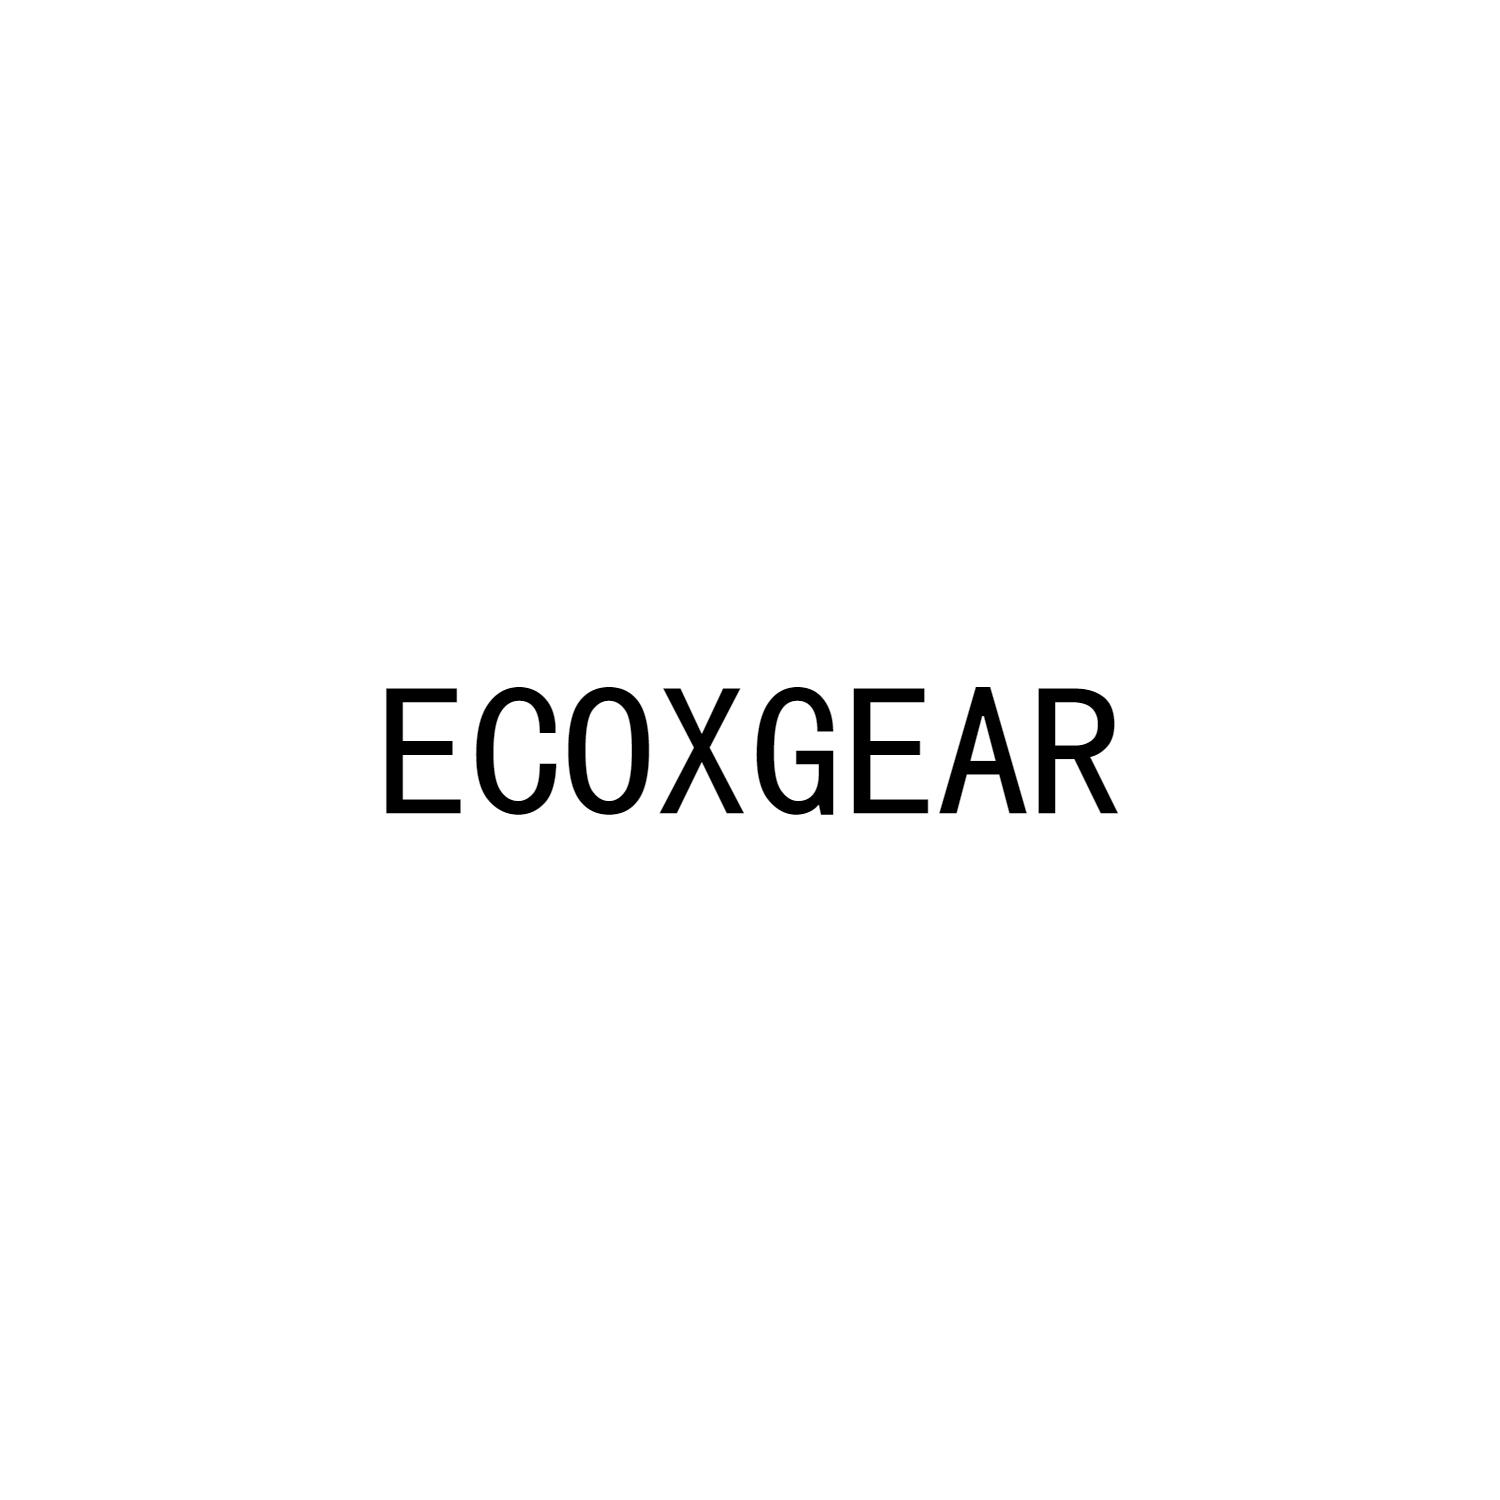 ECOXGEAR